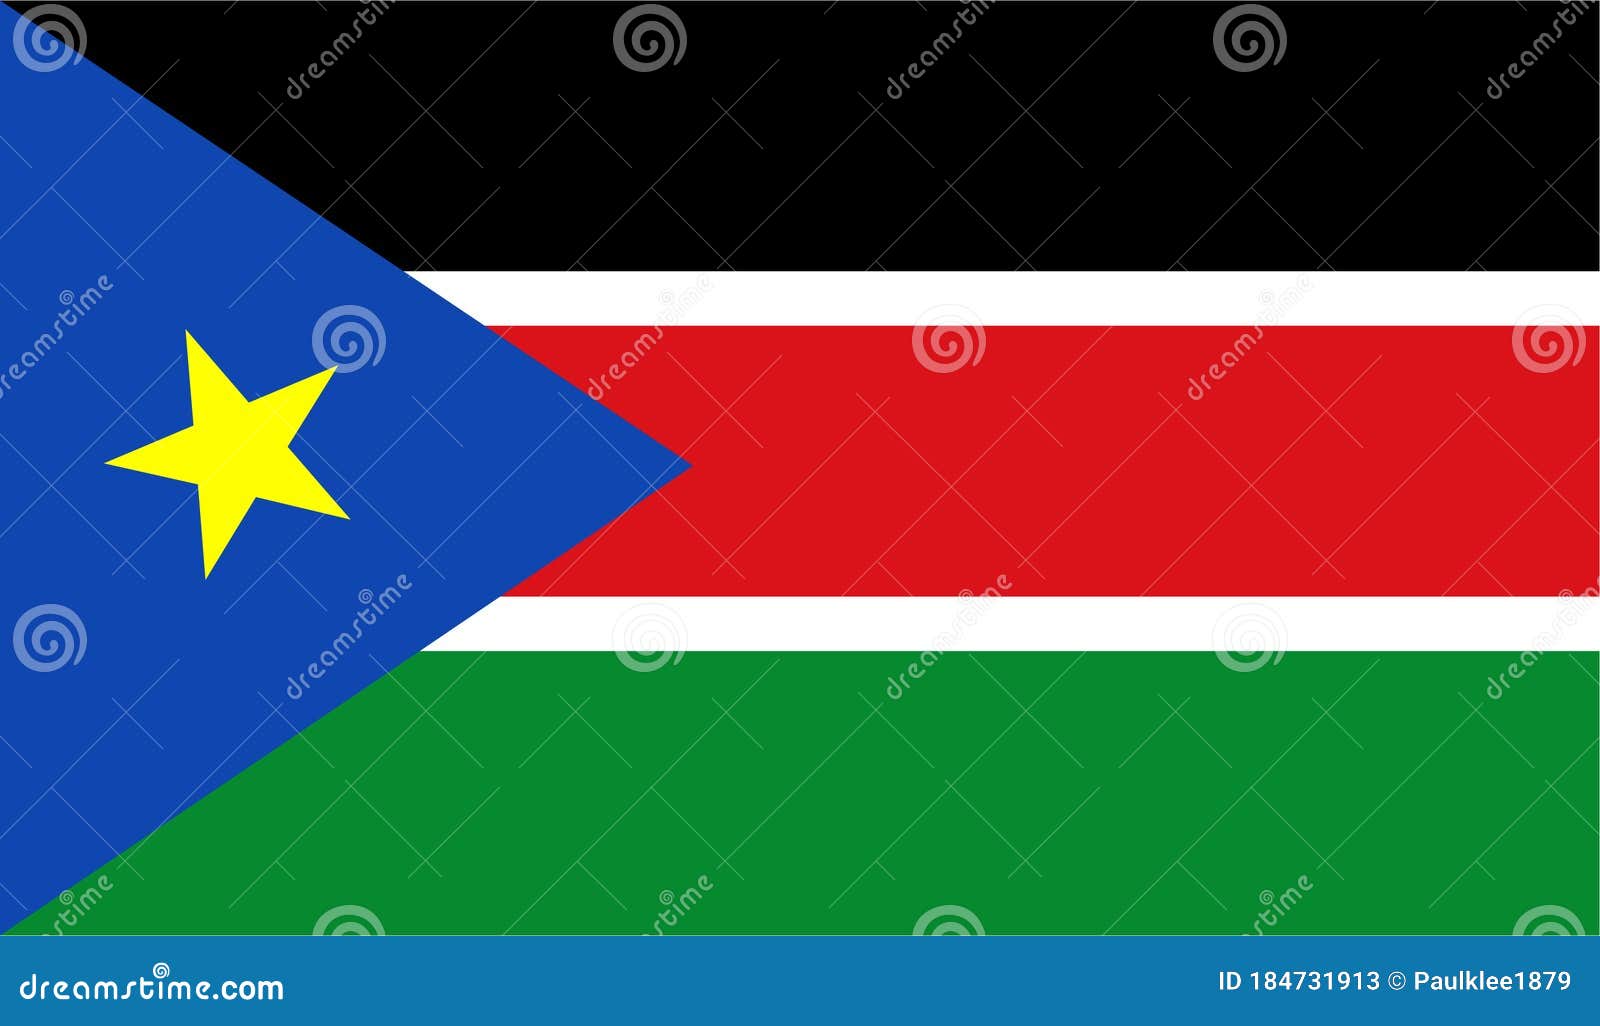 south sudan flag   eps